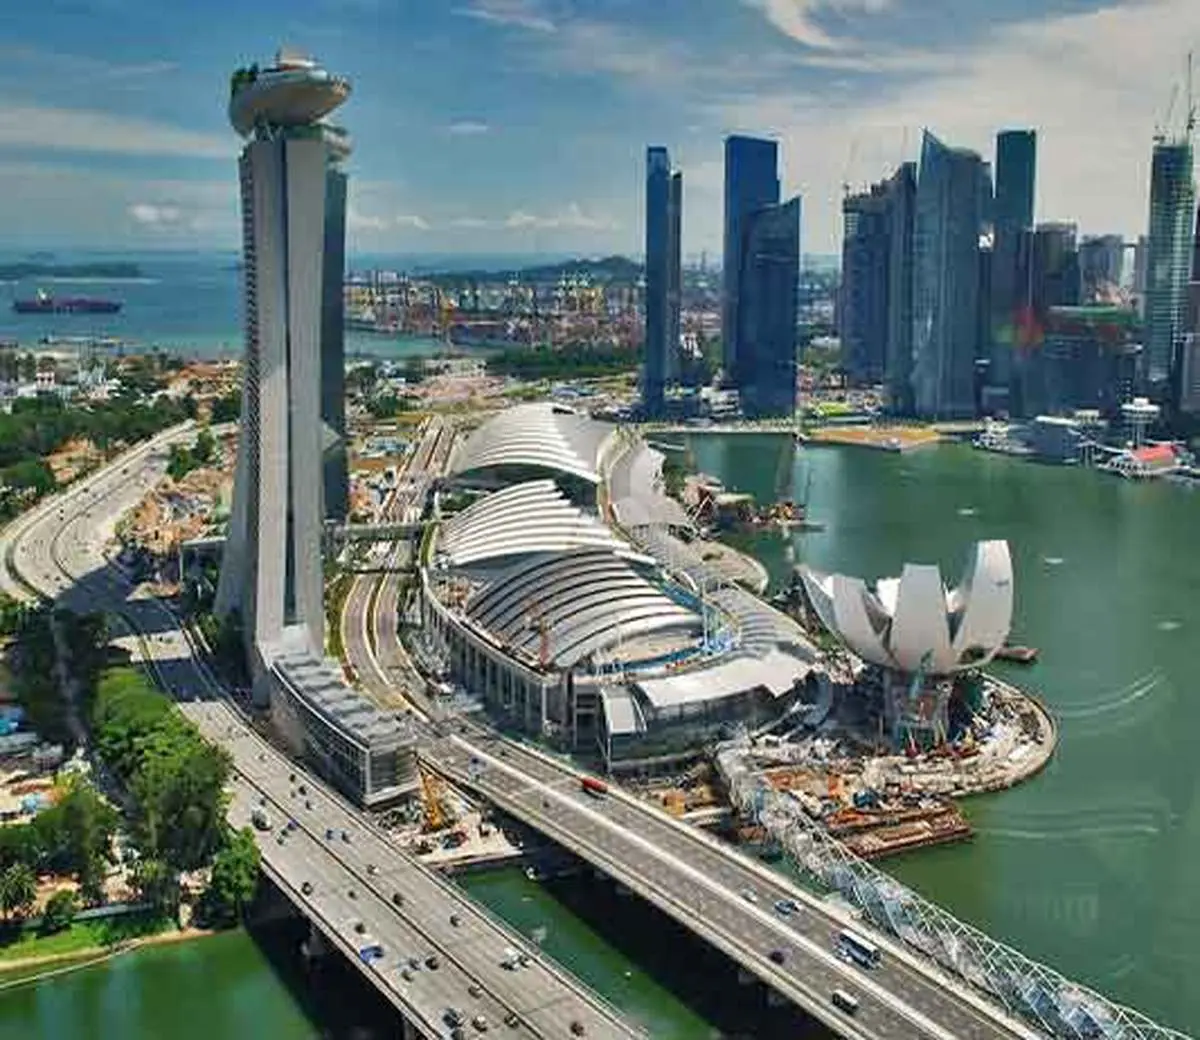 پیام موفقیت یک کشور به جهان | اقتصاد سنگاپور جهانی شد | مرکز مالی بین المللی سنگاپور؛ آماده رویارویی با آینده